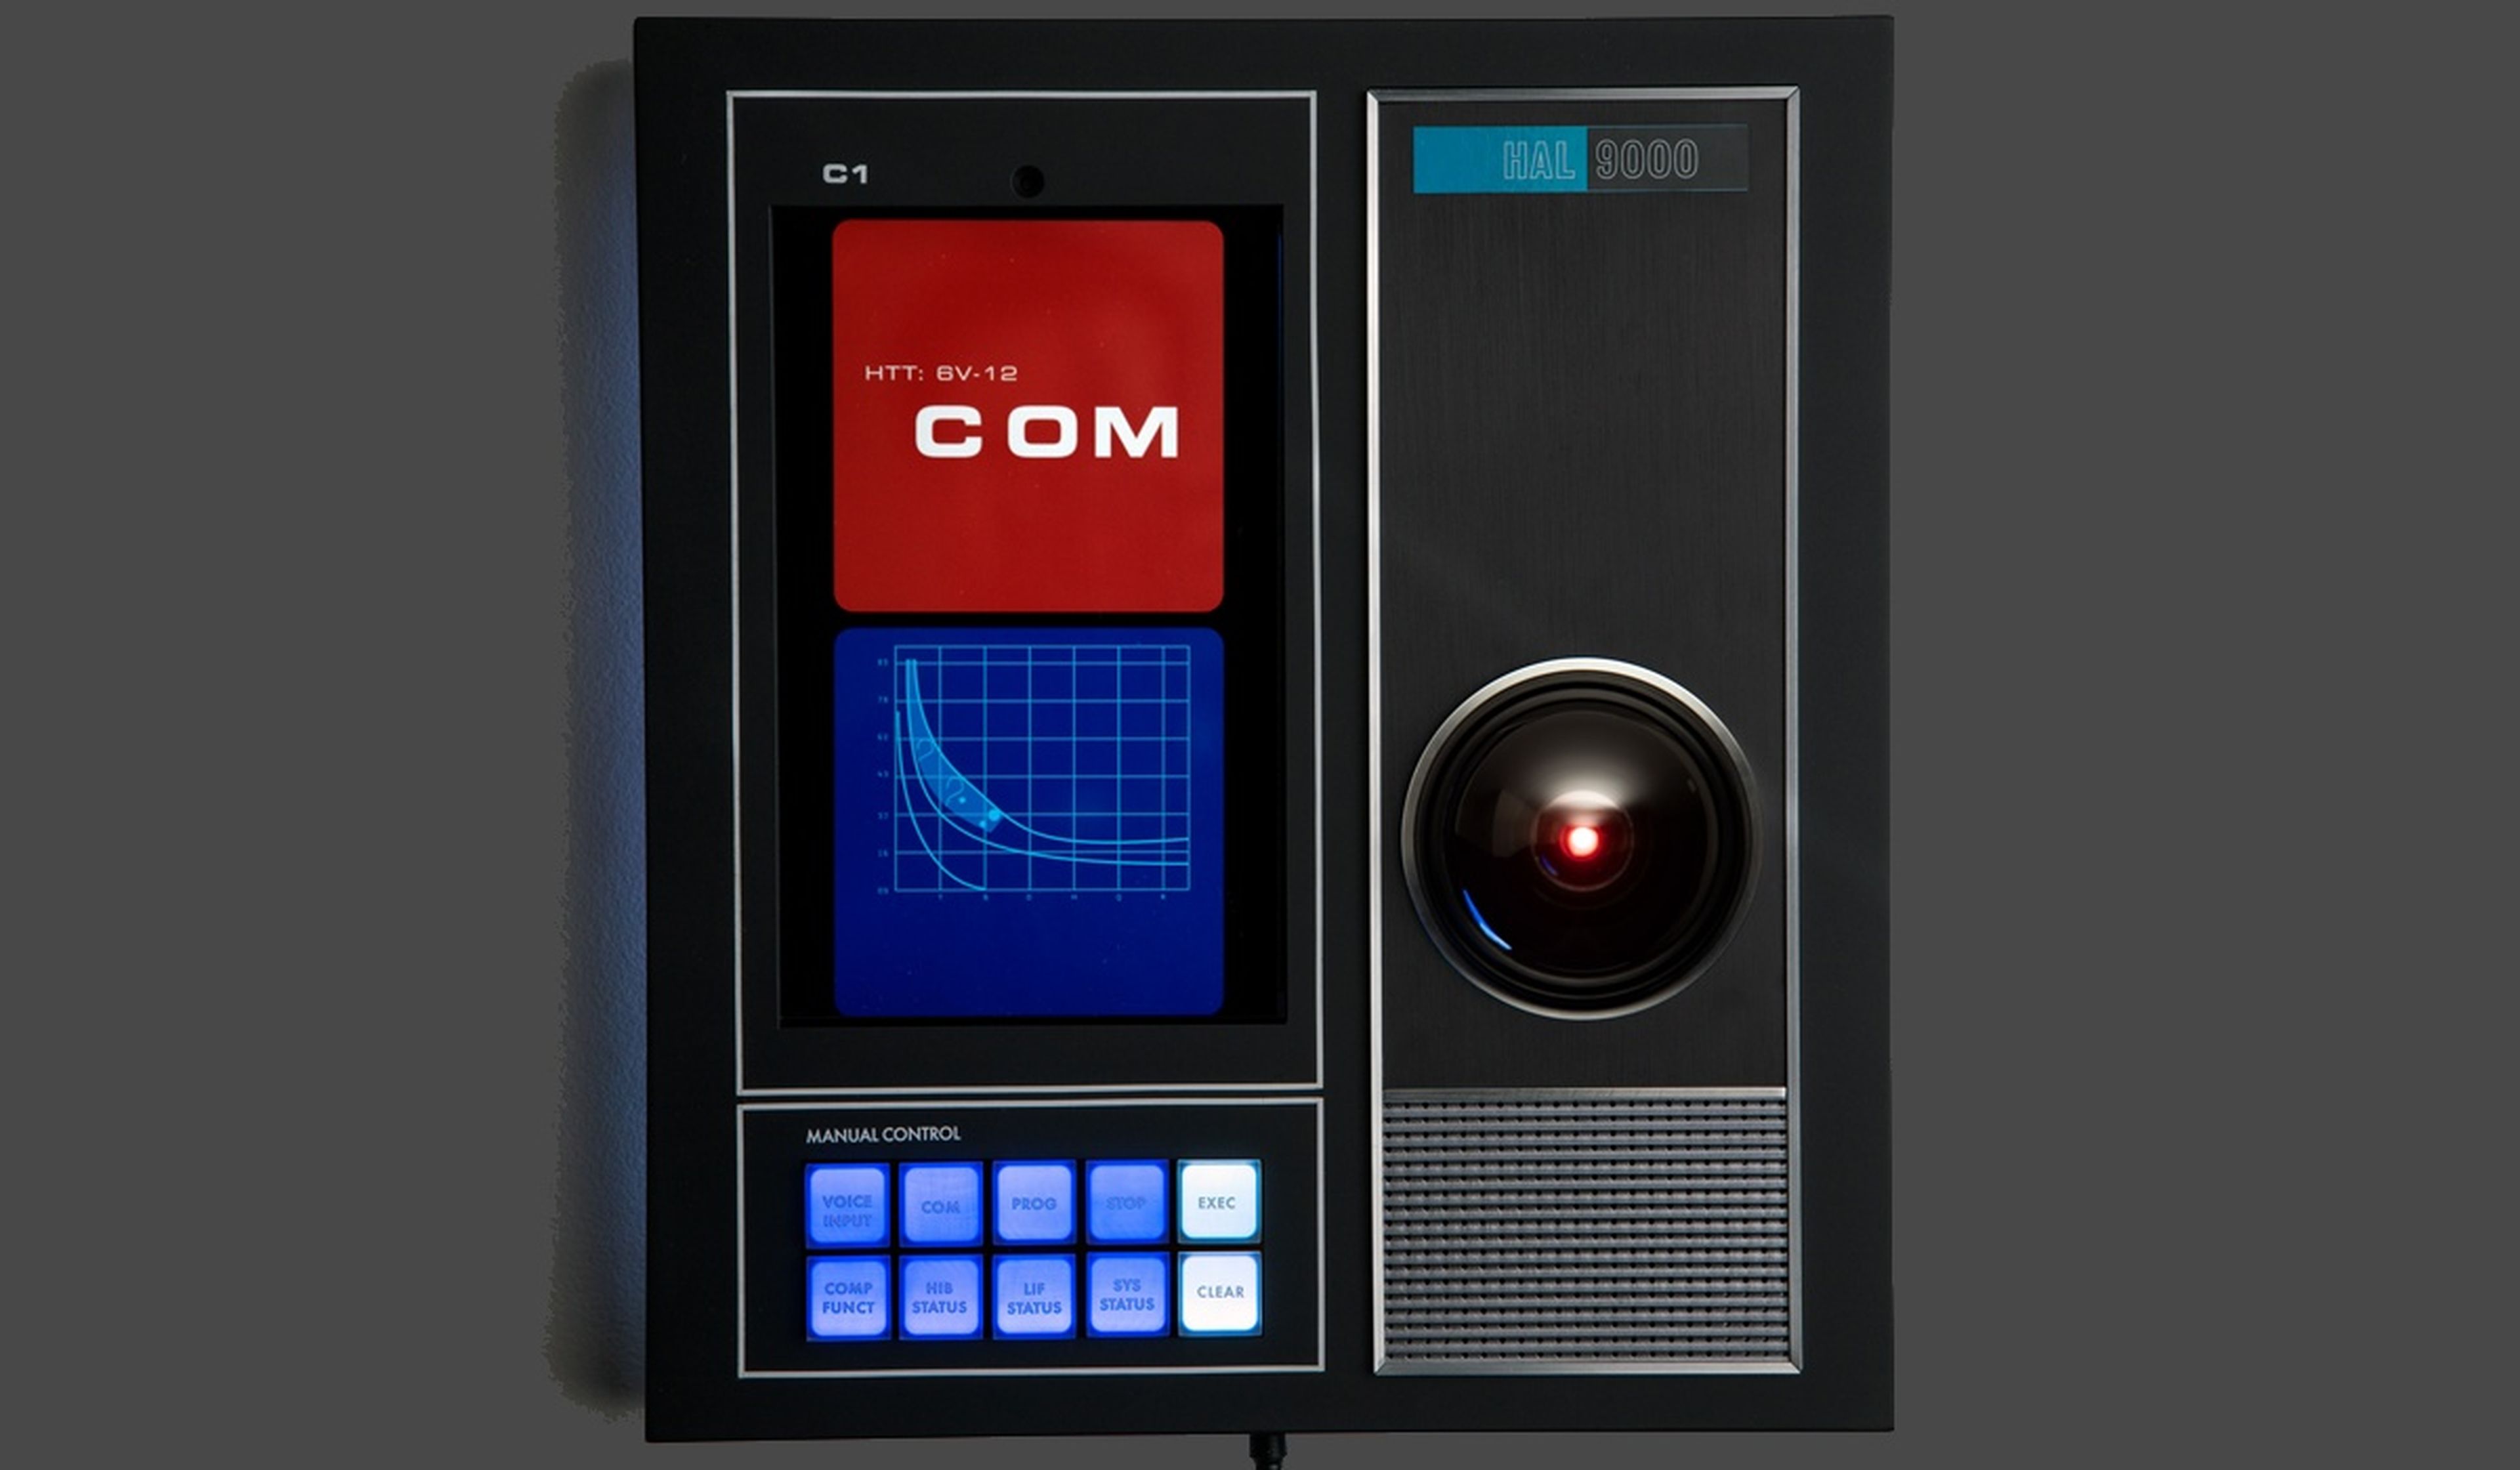 Ya puedes instalar en tu casa el ordenador HAL 9000 de 2001 Una Odisea del Espacio